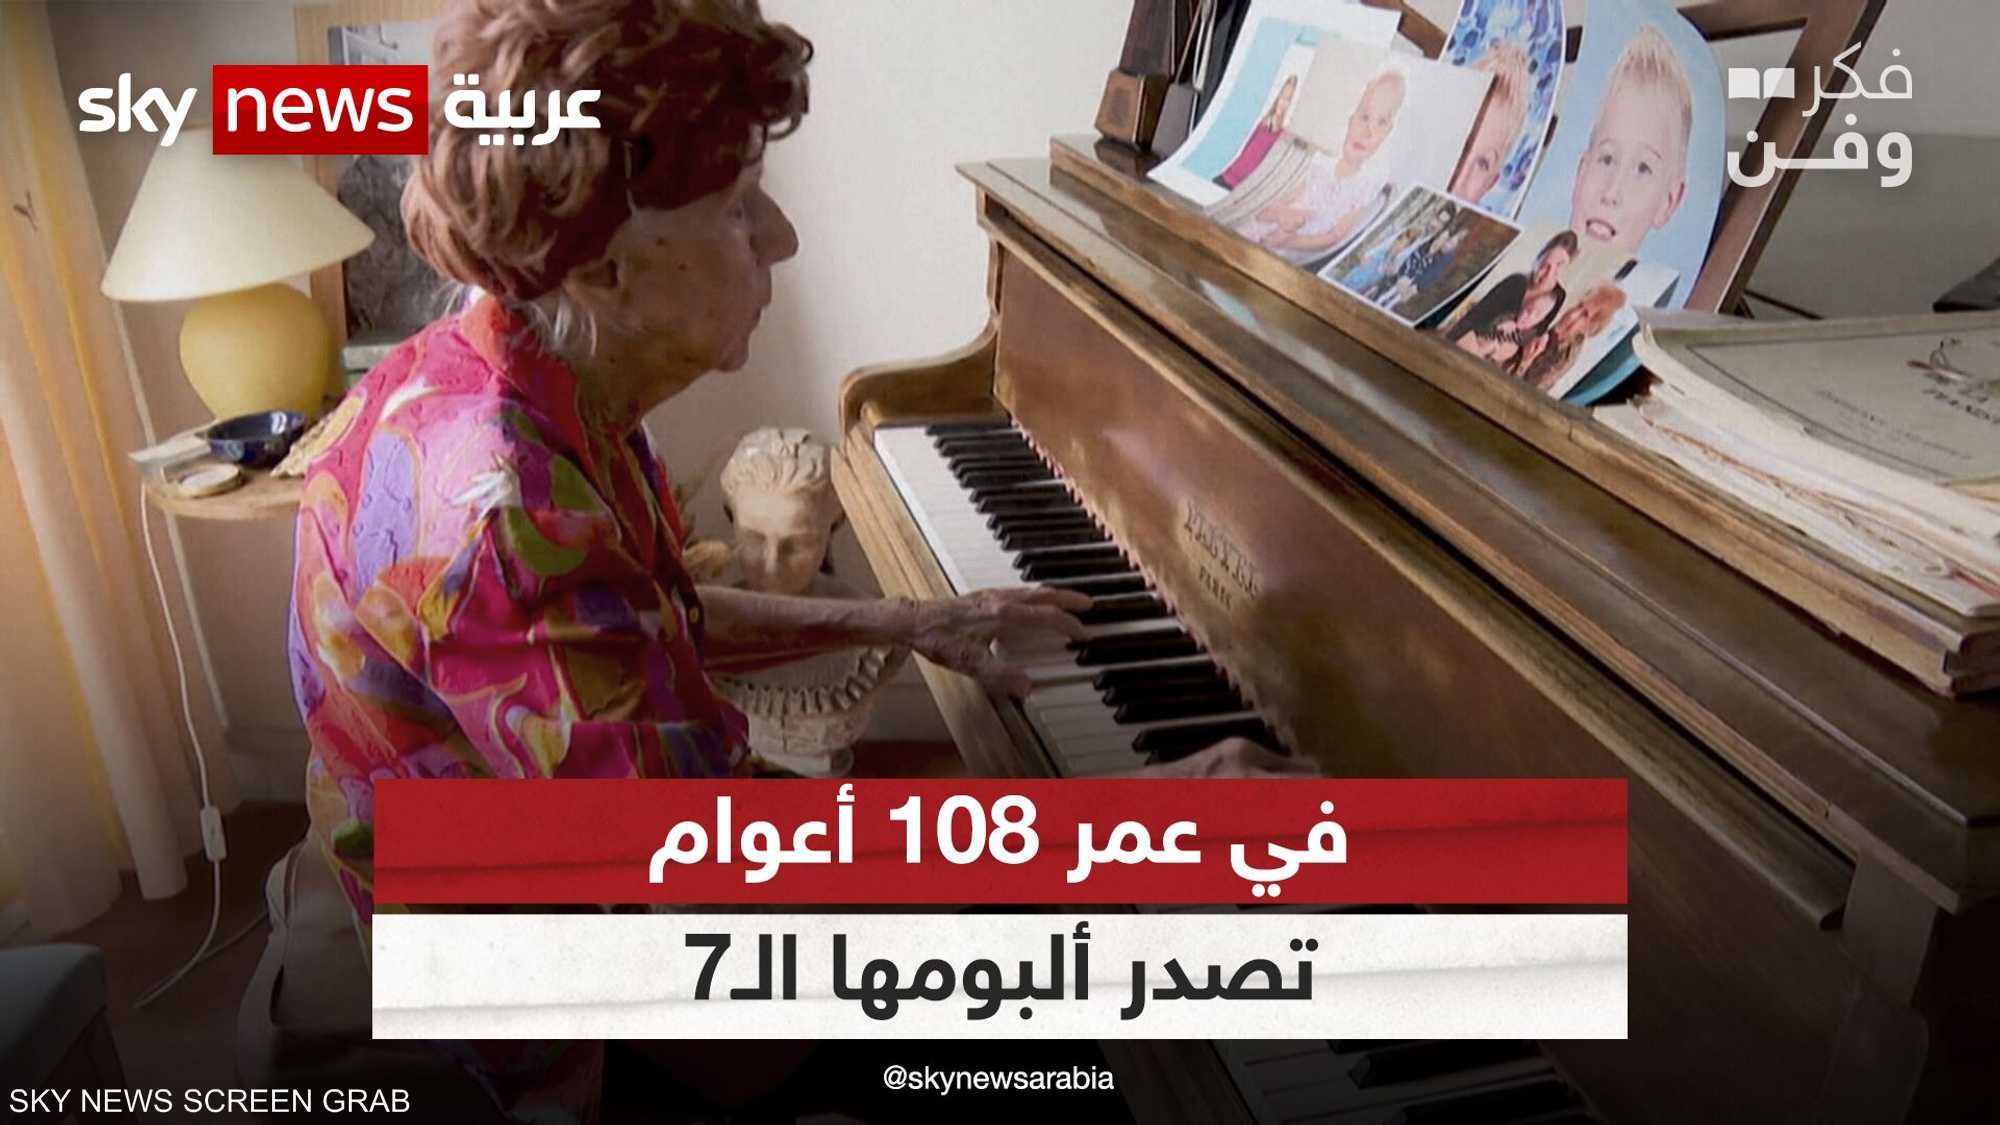 كوليت ماز تصدر ألبومها الموسيقي السابع في عمر 108 أعوام